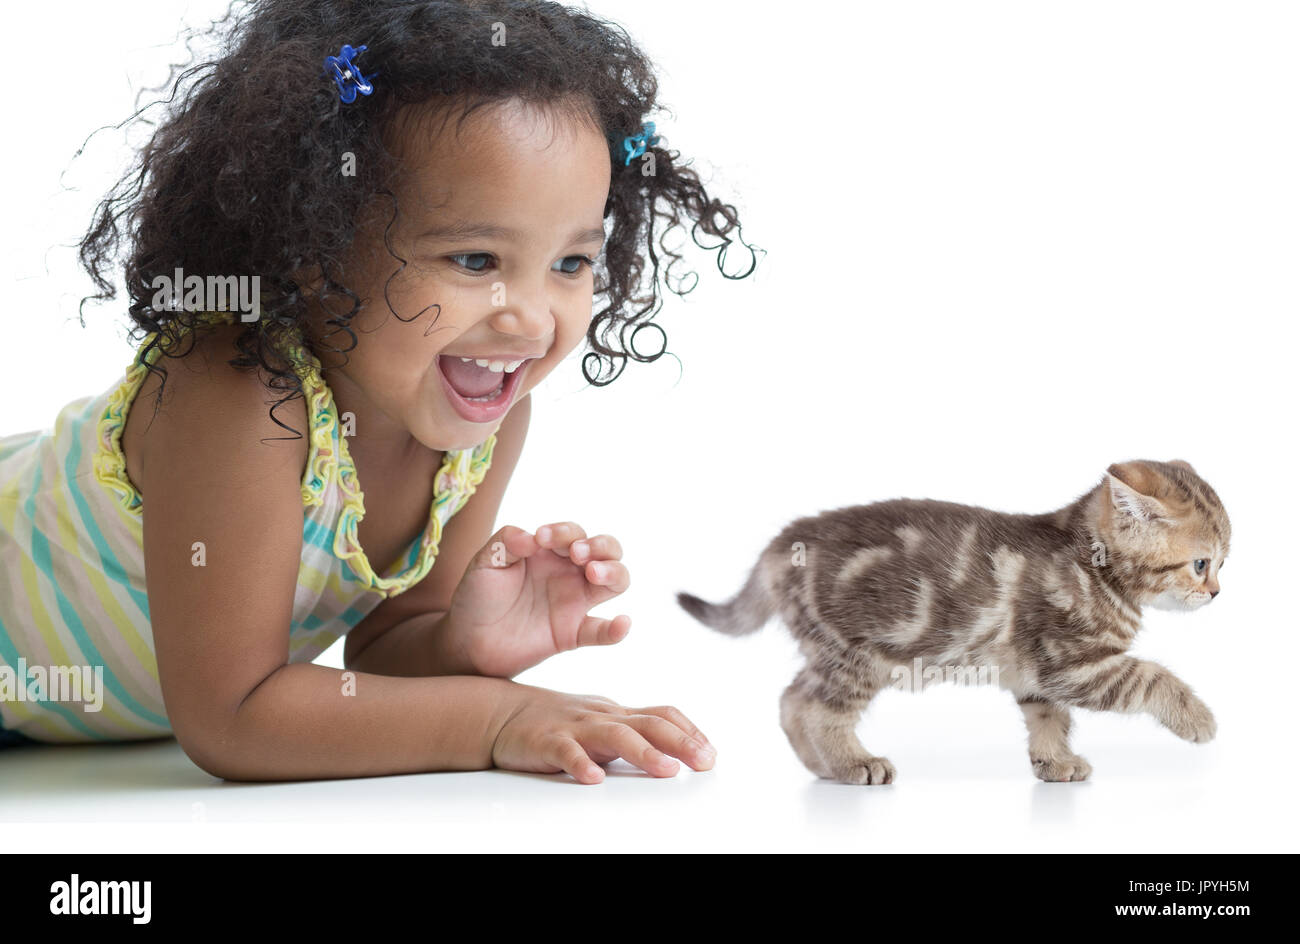 Capretto felice ragazza che gioca con un gattino Foto Stock